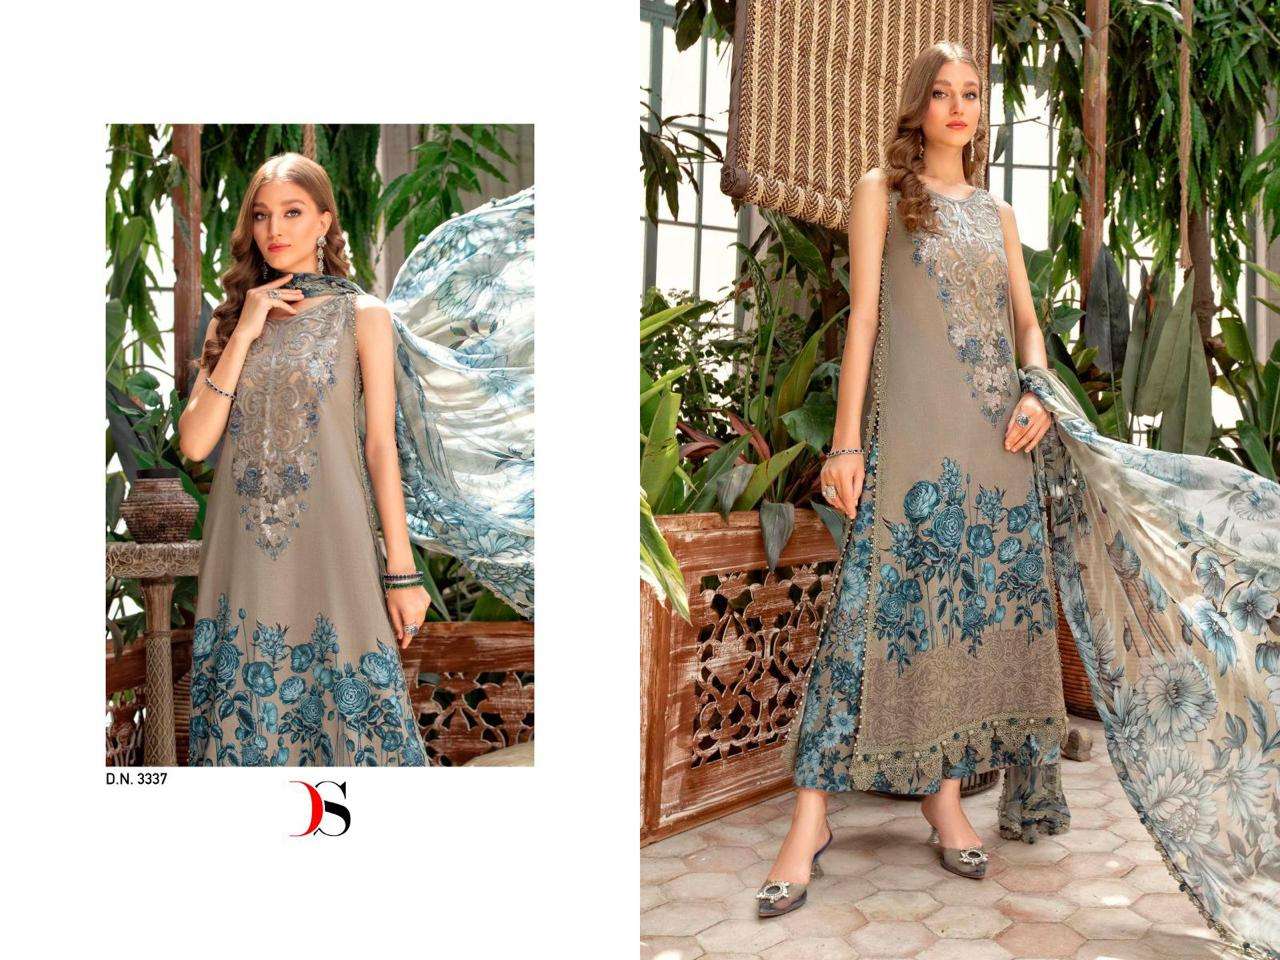 deepsy suits m print spring summer 23 vol-3 3331-3338 series unstich designer pakistani salwar suits catalogue surat